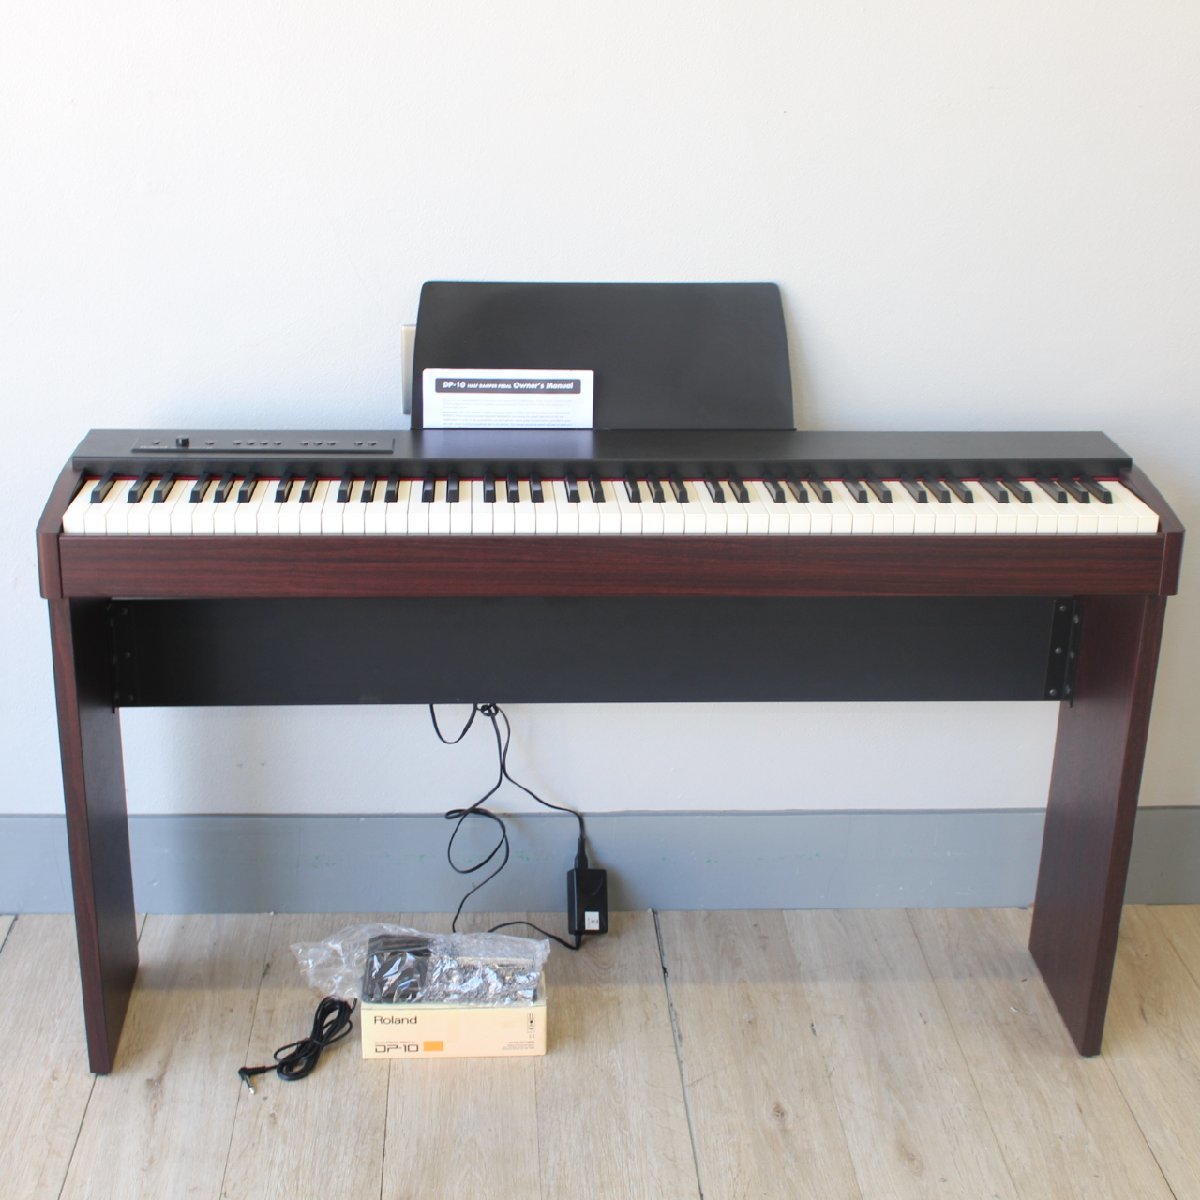 川崎市中原区にて ローランド 電子ピアノ CT-6817 2014年製 を出張買取させて頂きました。